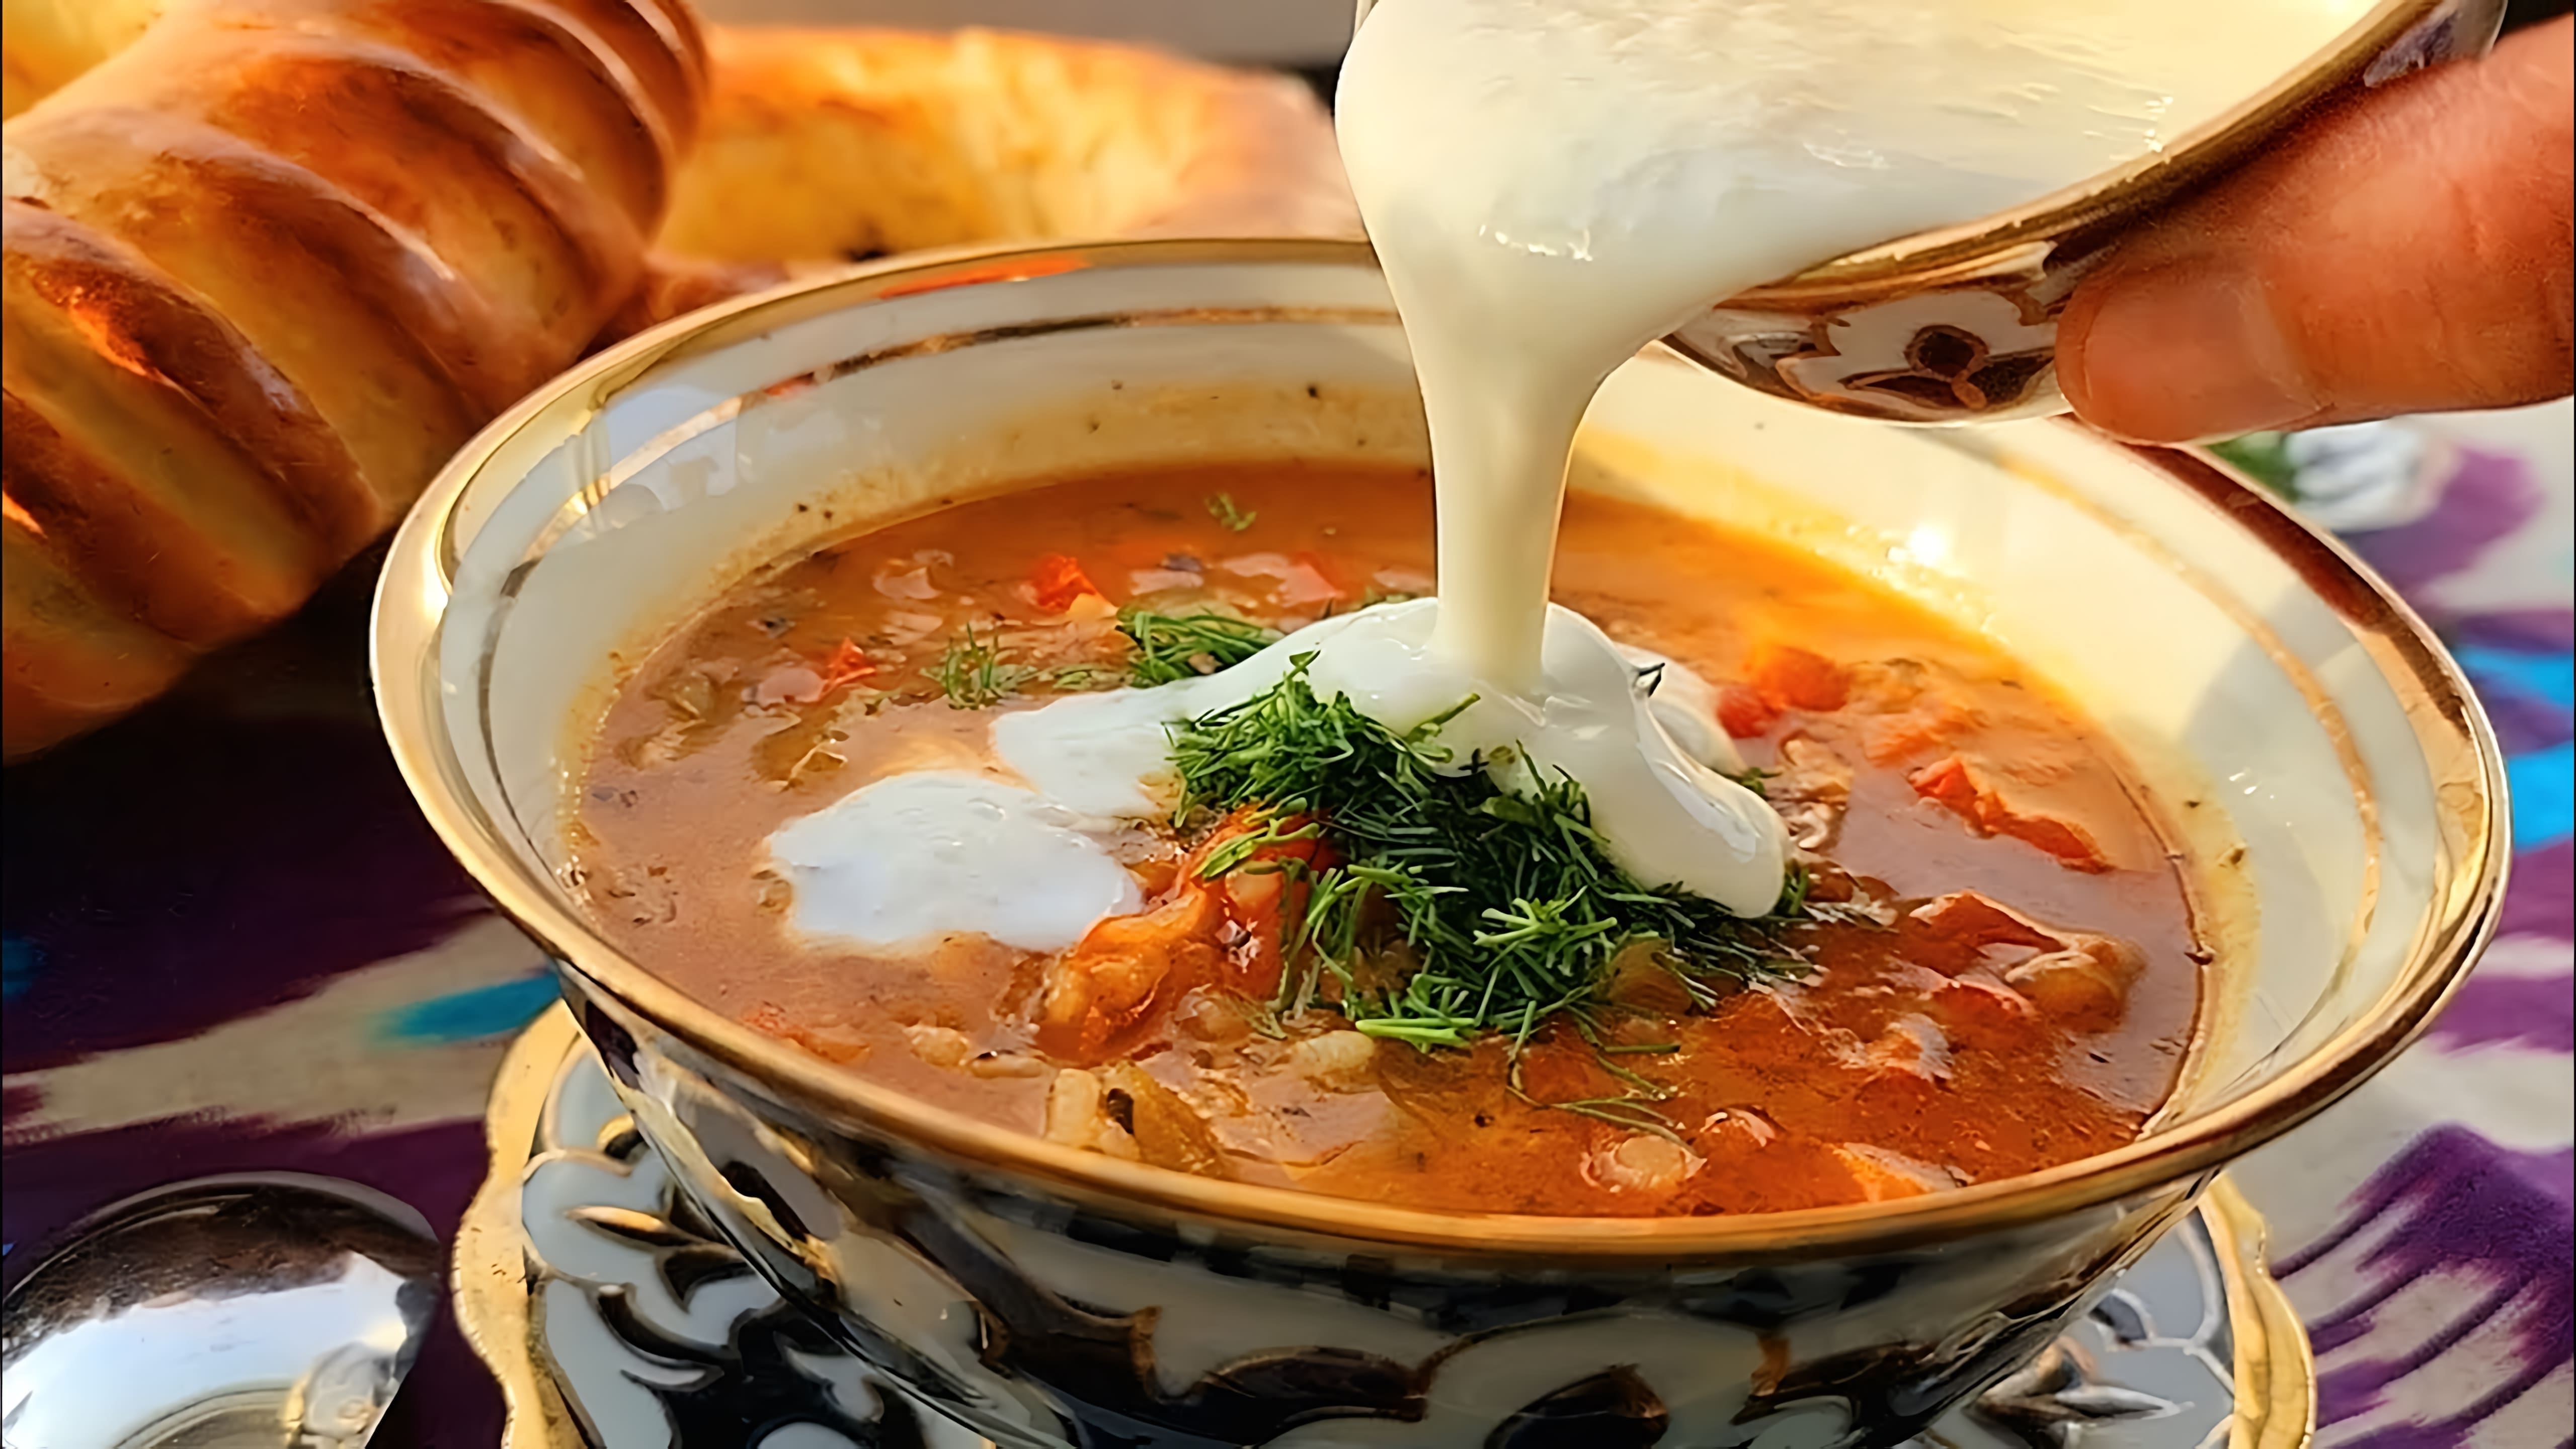 Жареный Суп! Потрясающая Узбекская Мастава